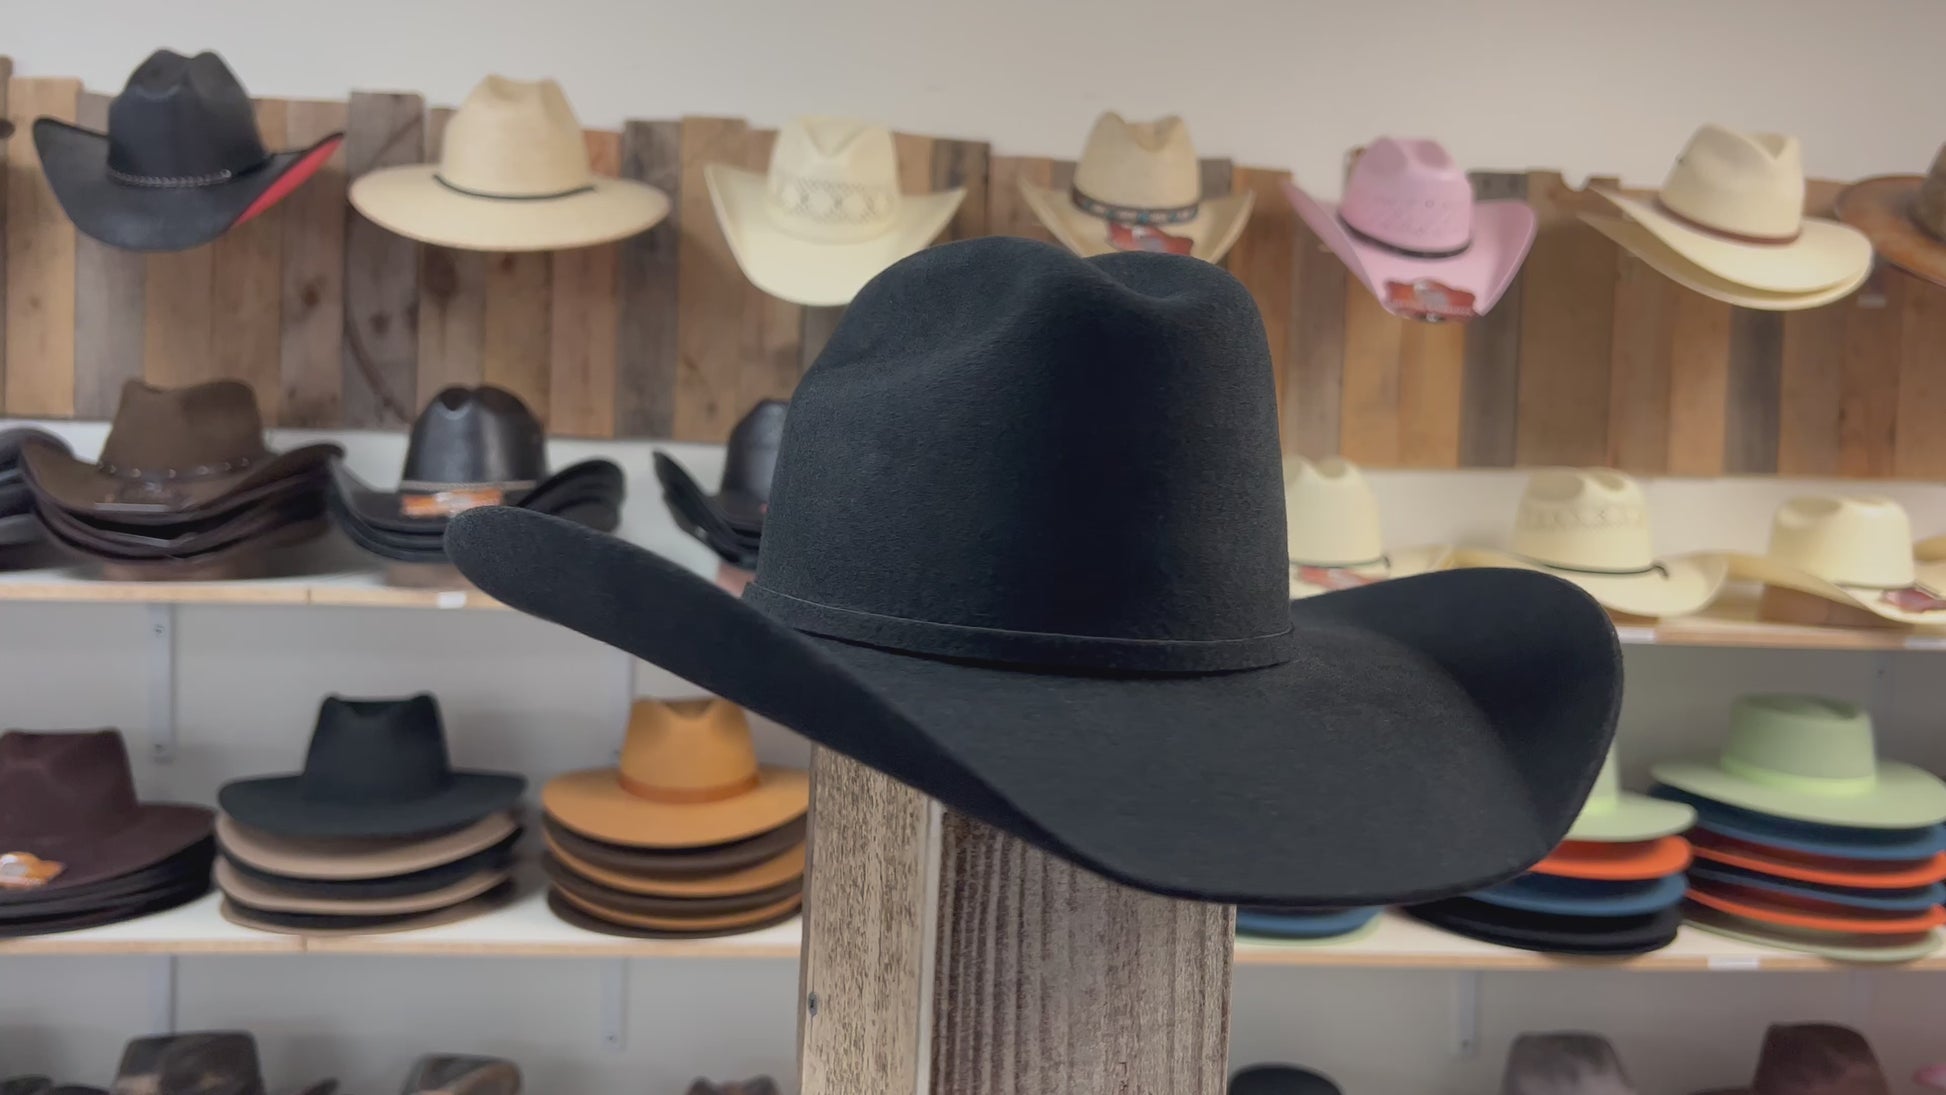 Yellowstone #1 Brown Felt Cowboy Hat 7